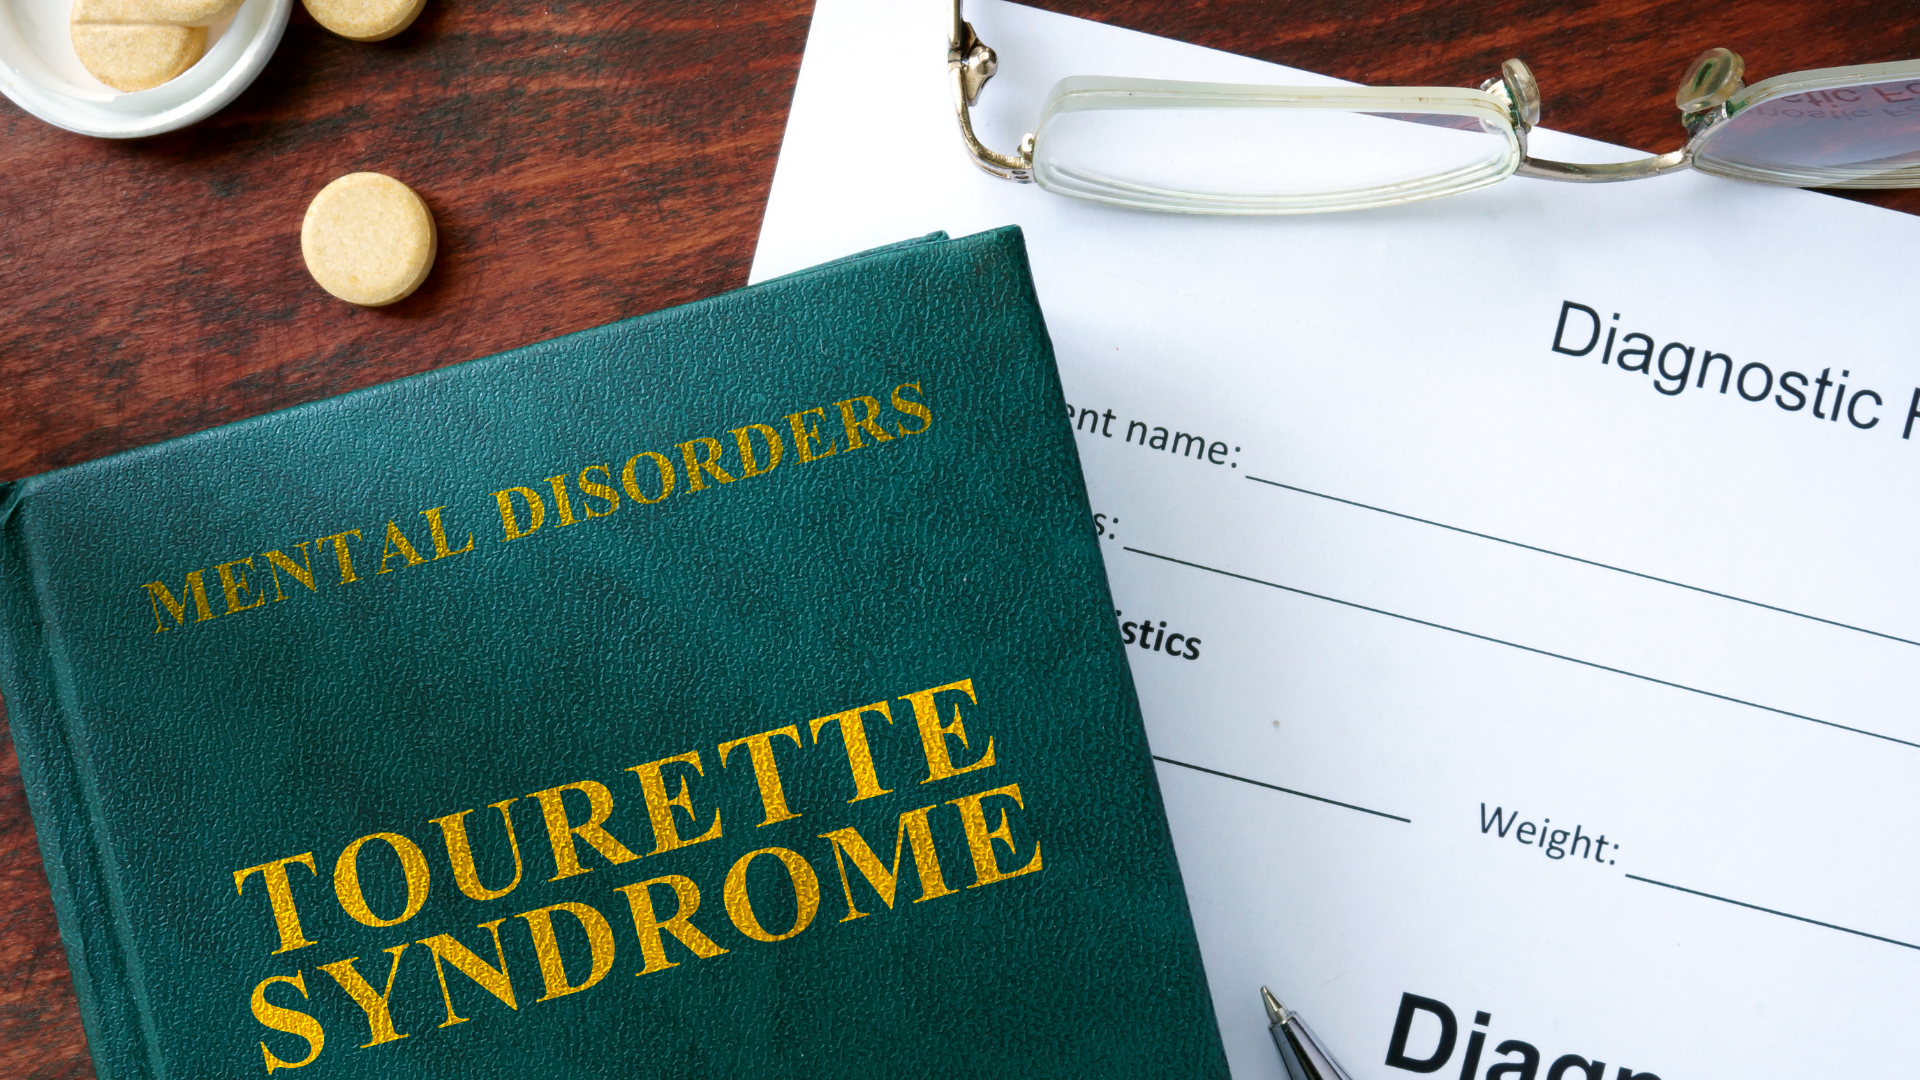 Síndrome de Tourette poderá ser considerada deficiência para fins legais